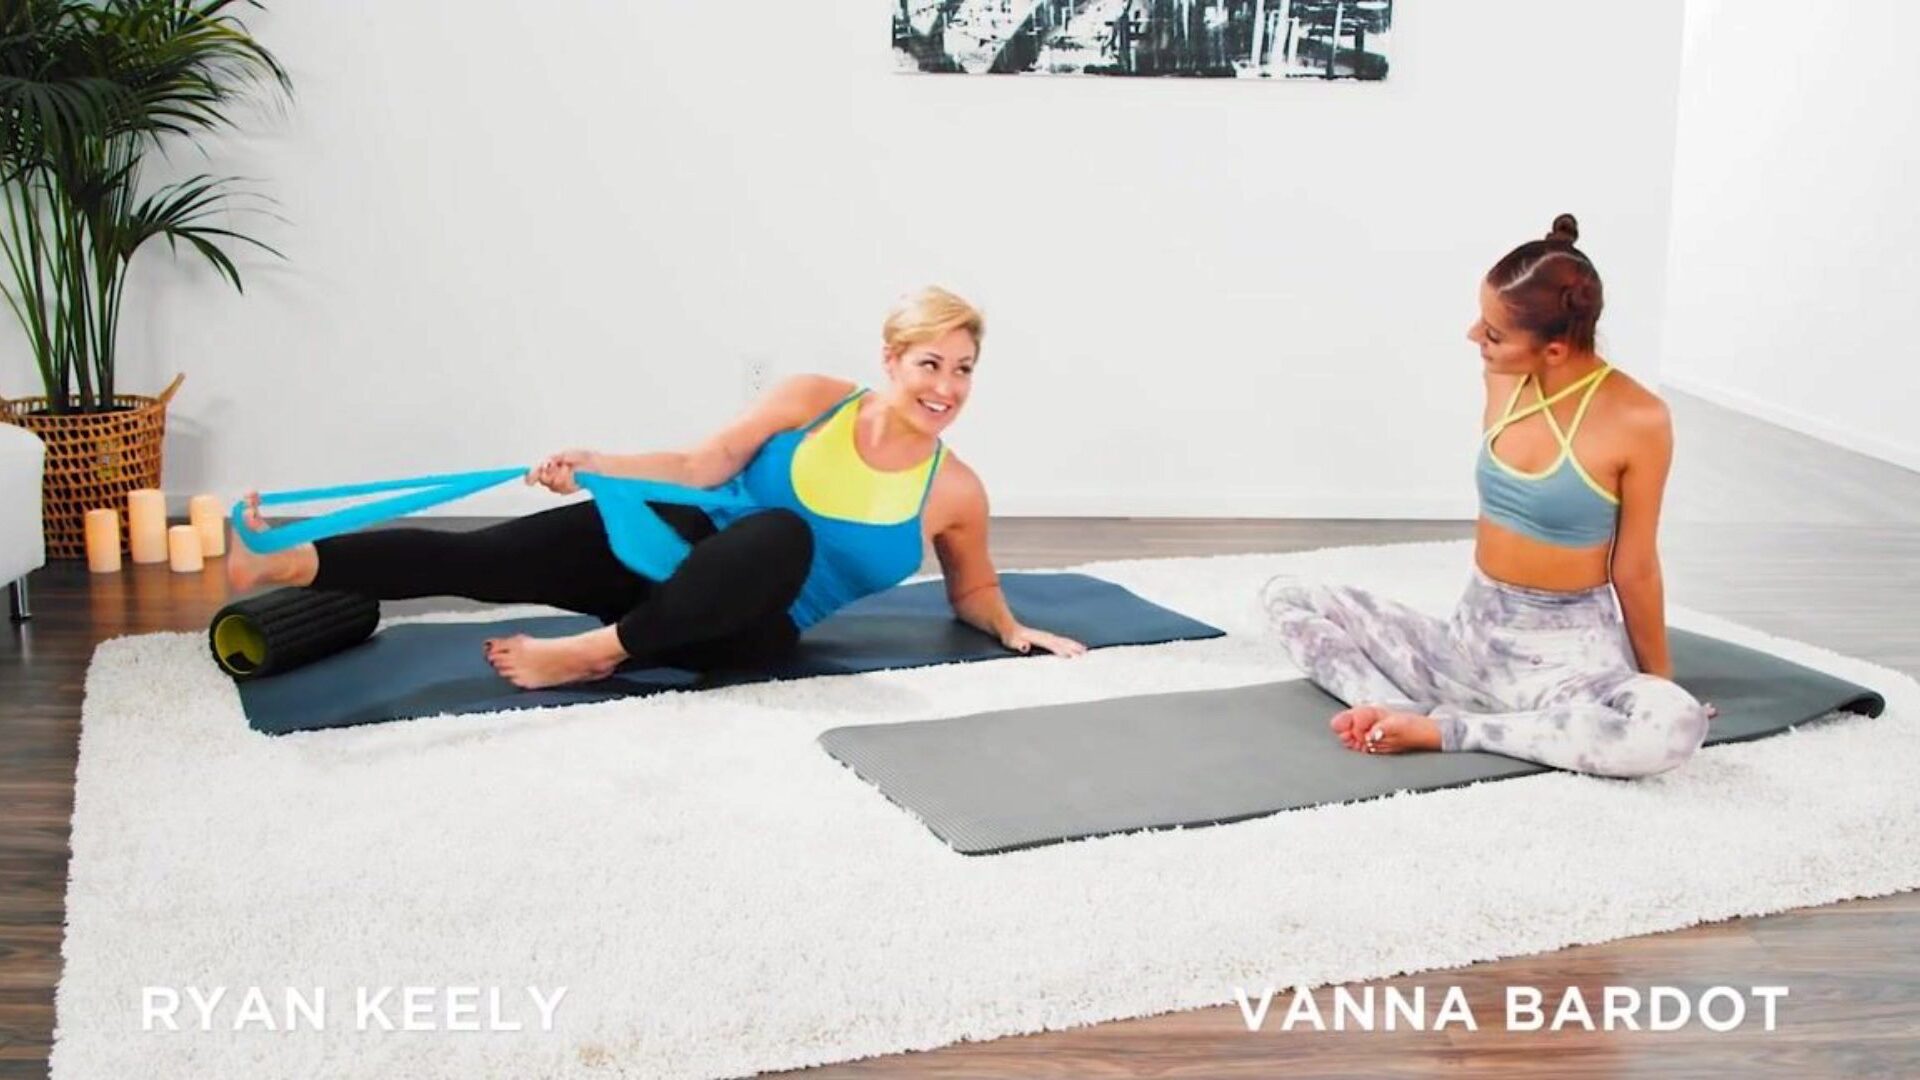 mommysgirl Vanna Bardot ma hardcorowy trening jogi z palcami z gorącą mamuśką Ryanem Keely